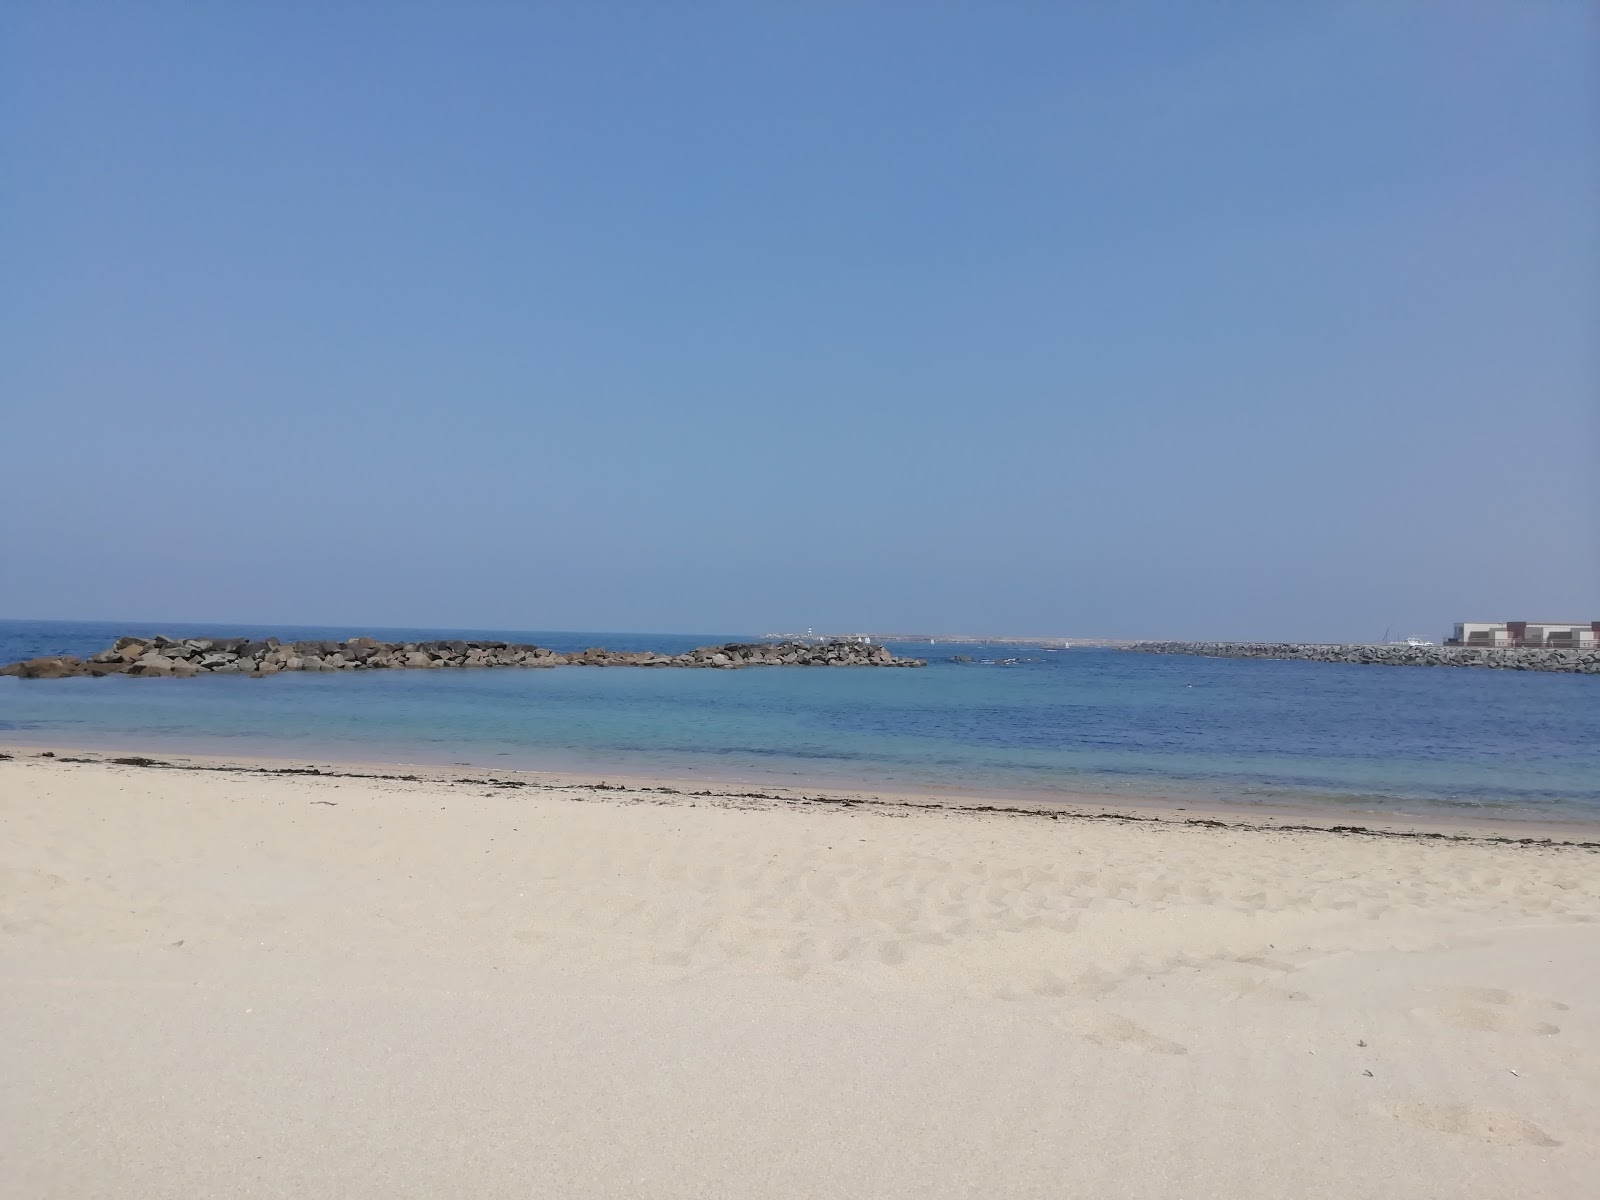 Fotografie cu Caxinas beach cu plajă spațioasă